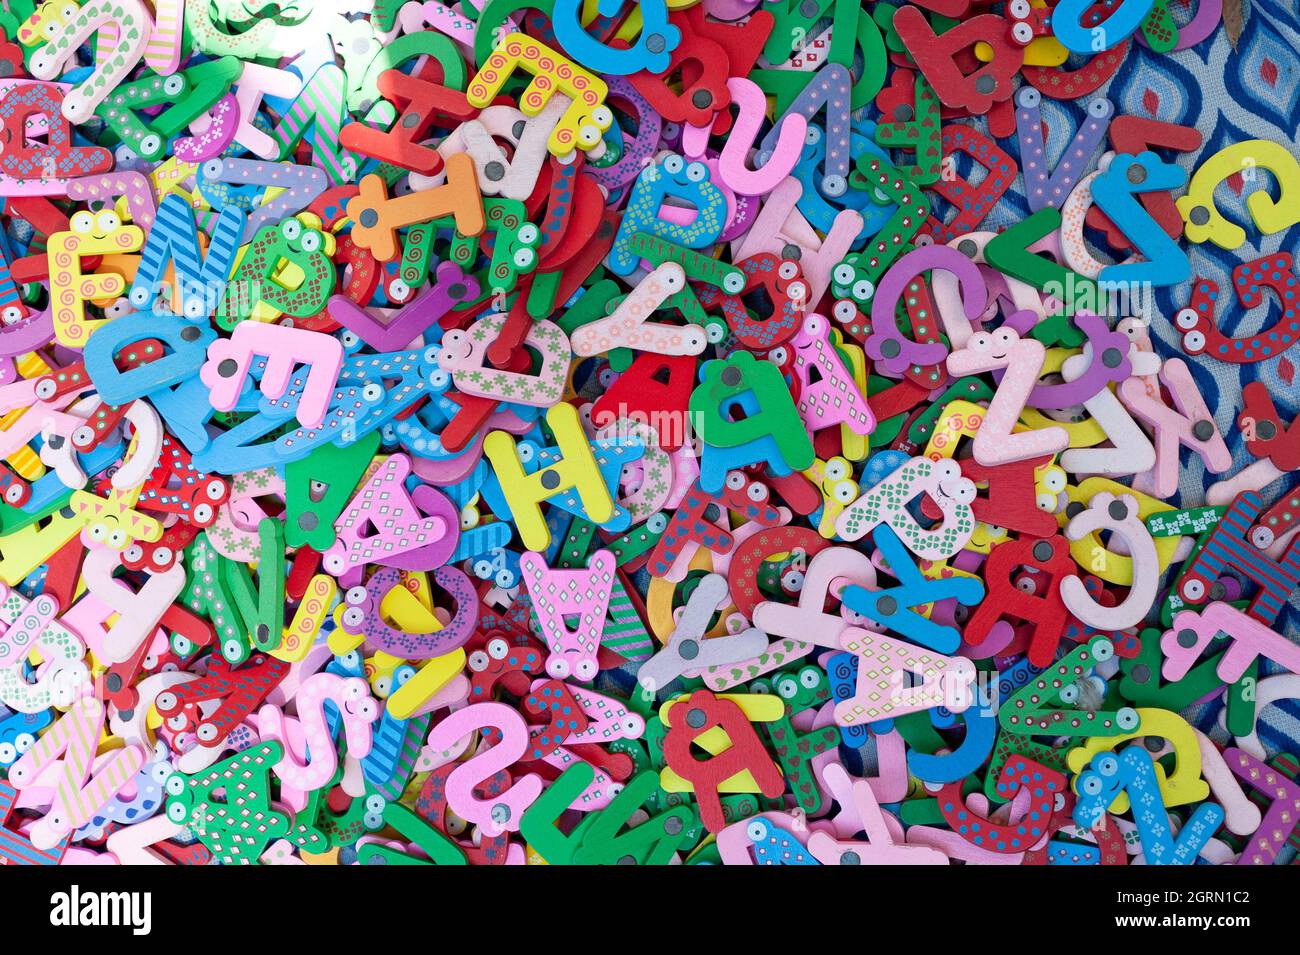 Spielzeug Buchstaben, Alphabet, Zahlen, bunt, Spaß Stock Foto. Stockfoto